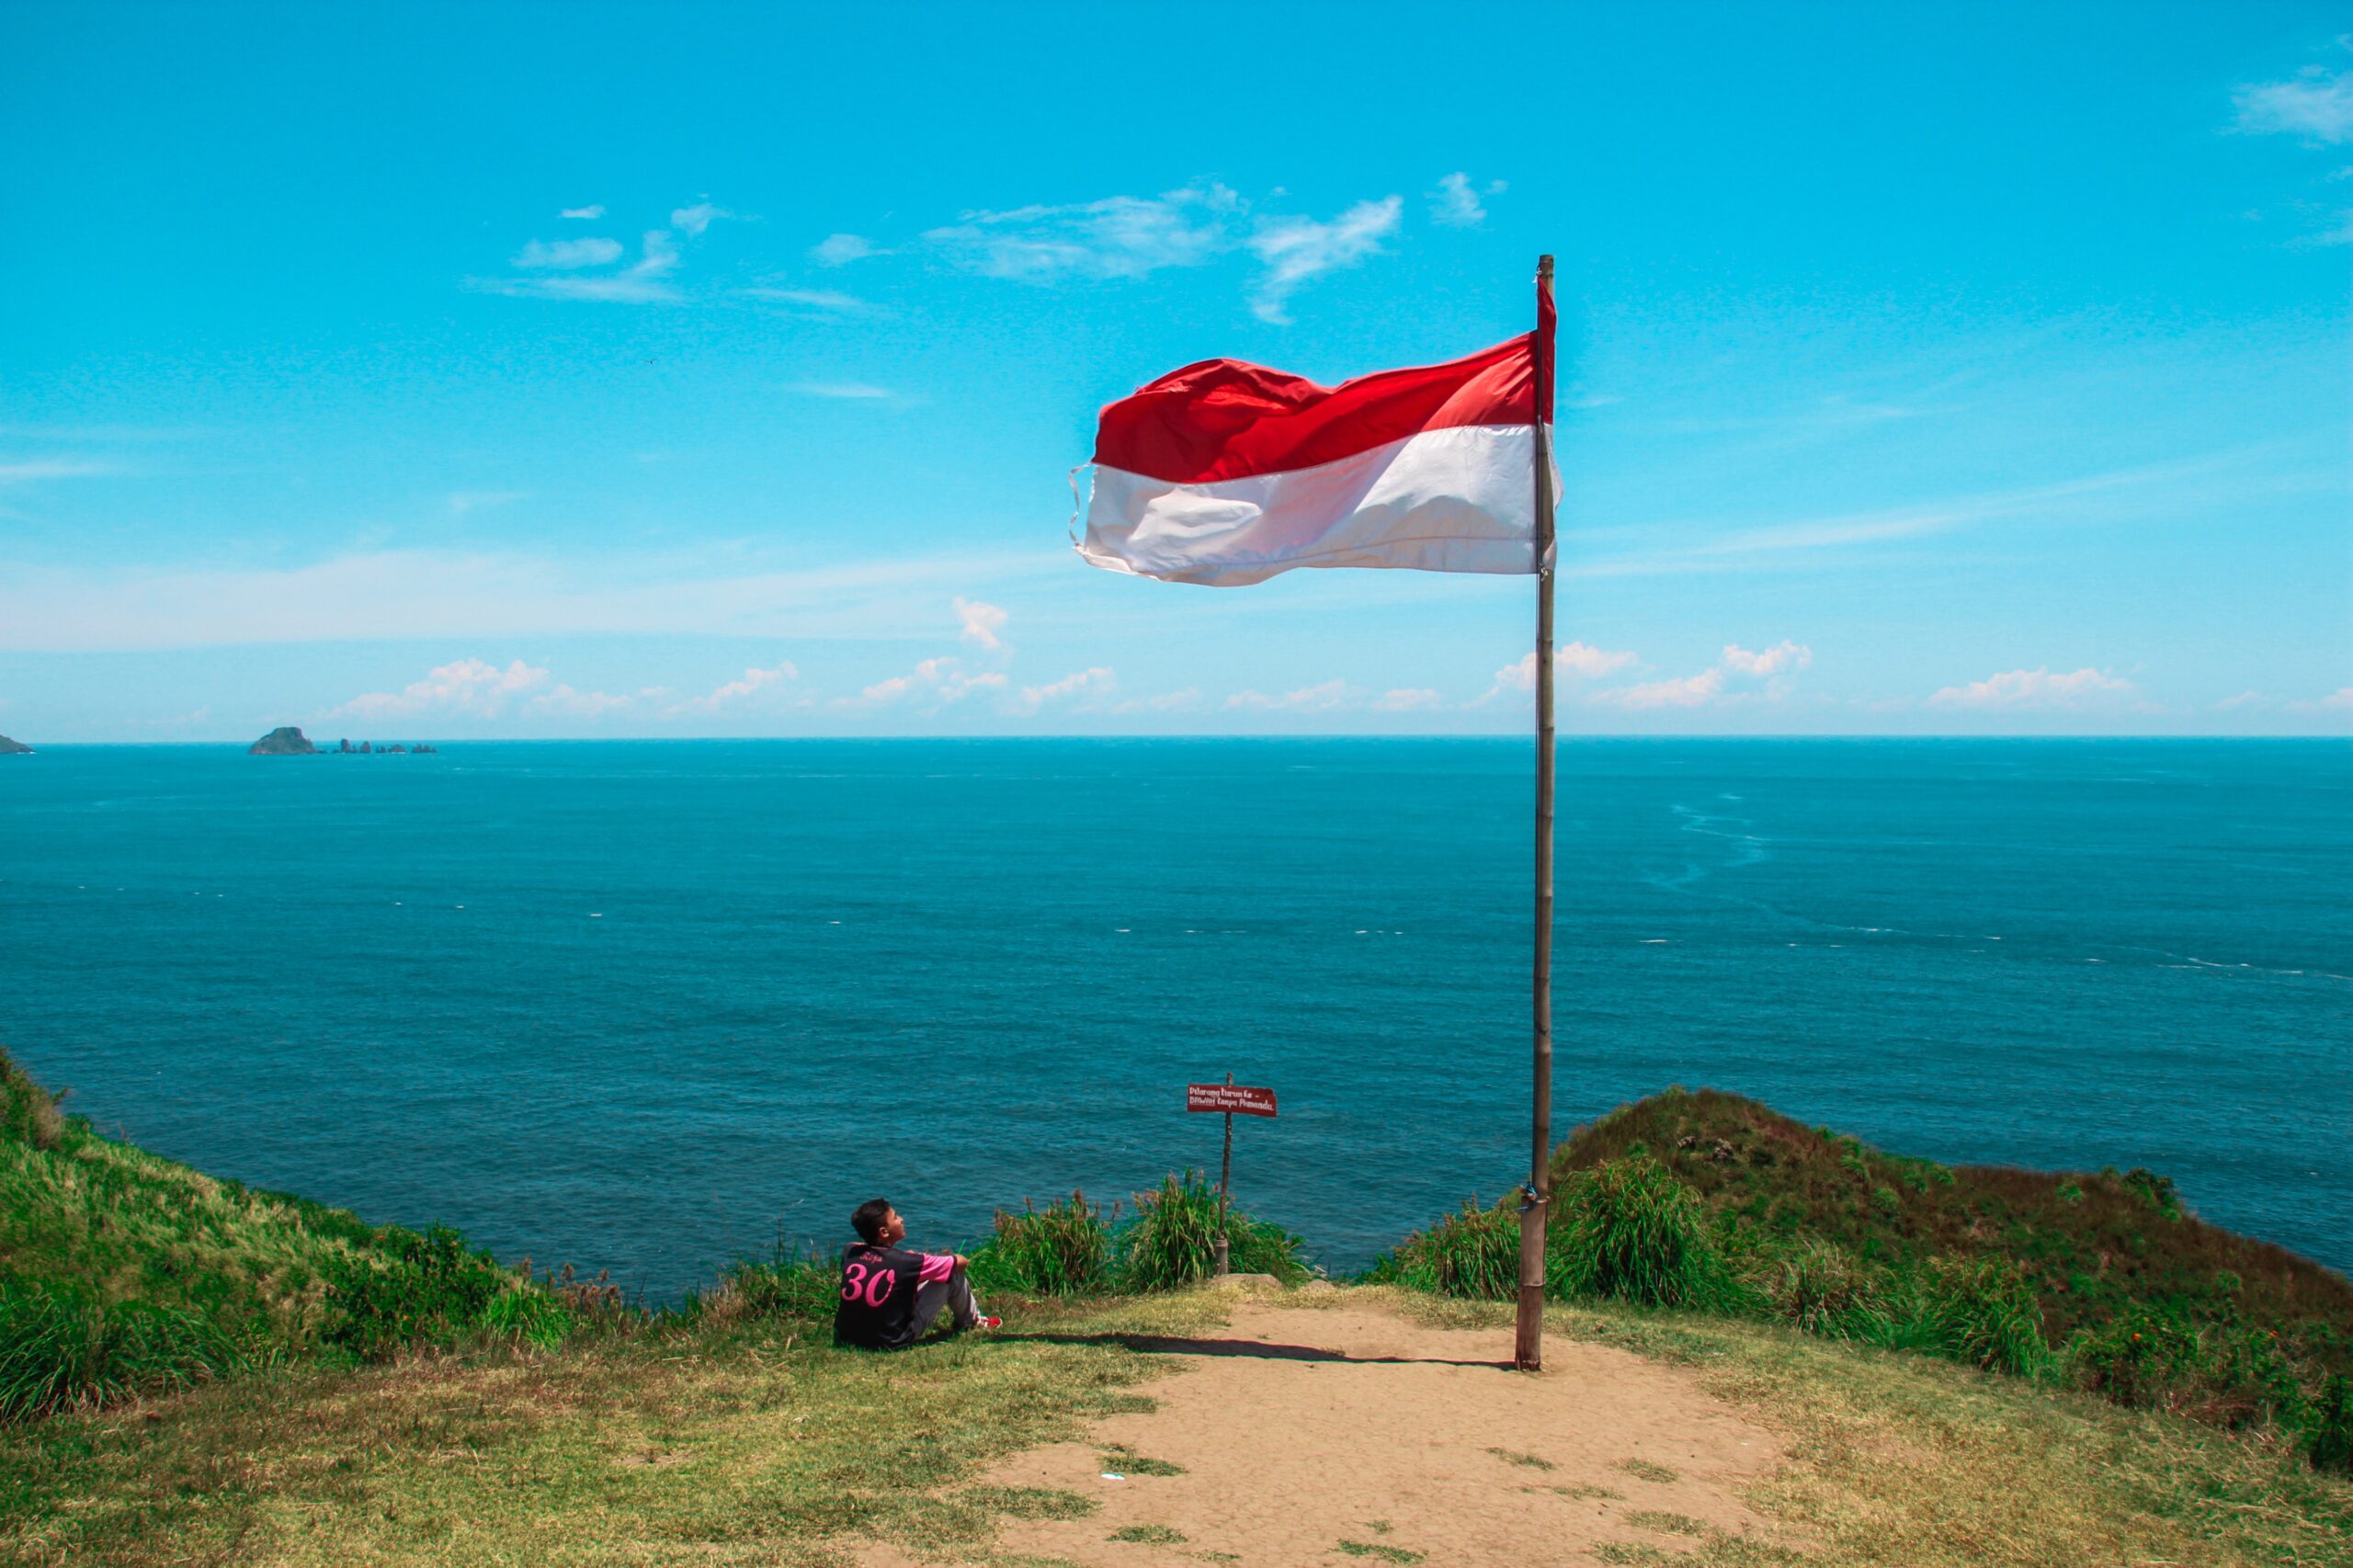 ऐसा क्या हुआ कि इंडोनेशिया (Indonesia ) को अपनी राजधानी ( Capital) स्थानांतरित करनी पड़ी ?